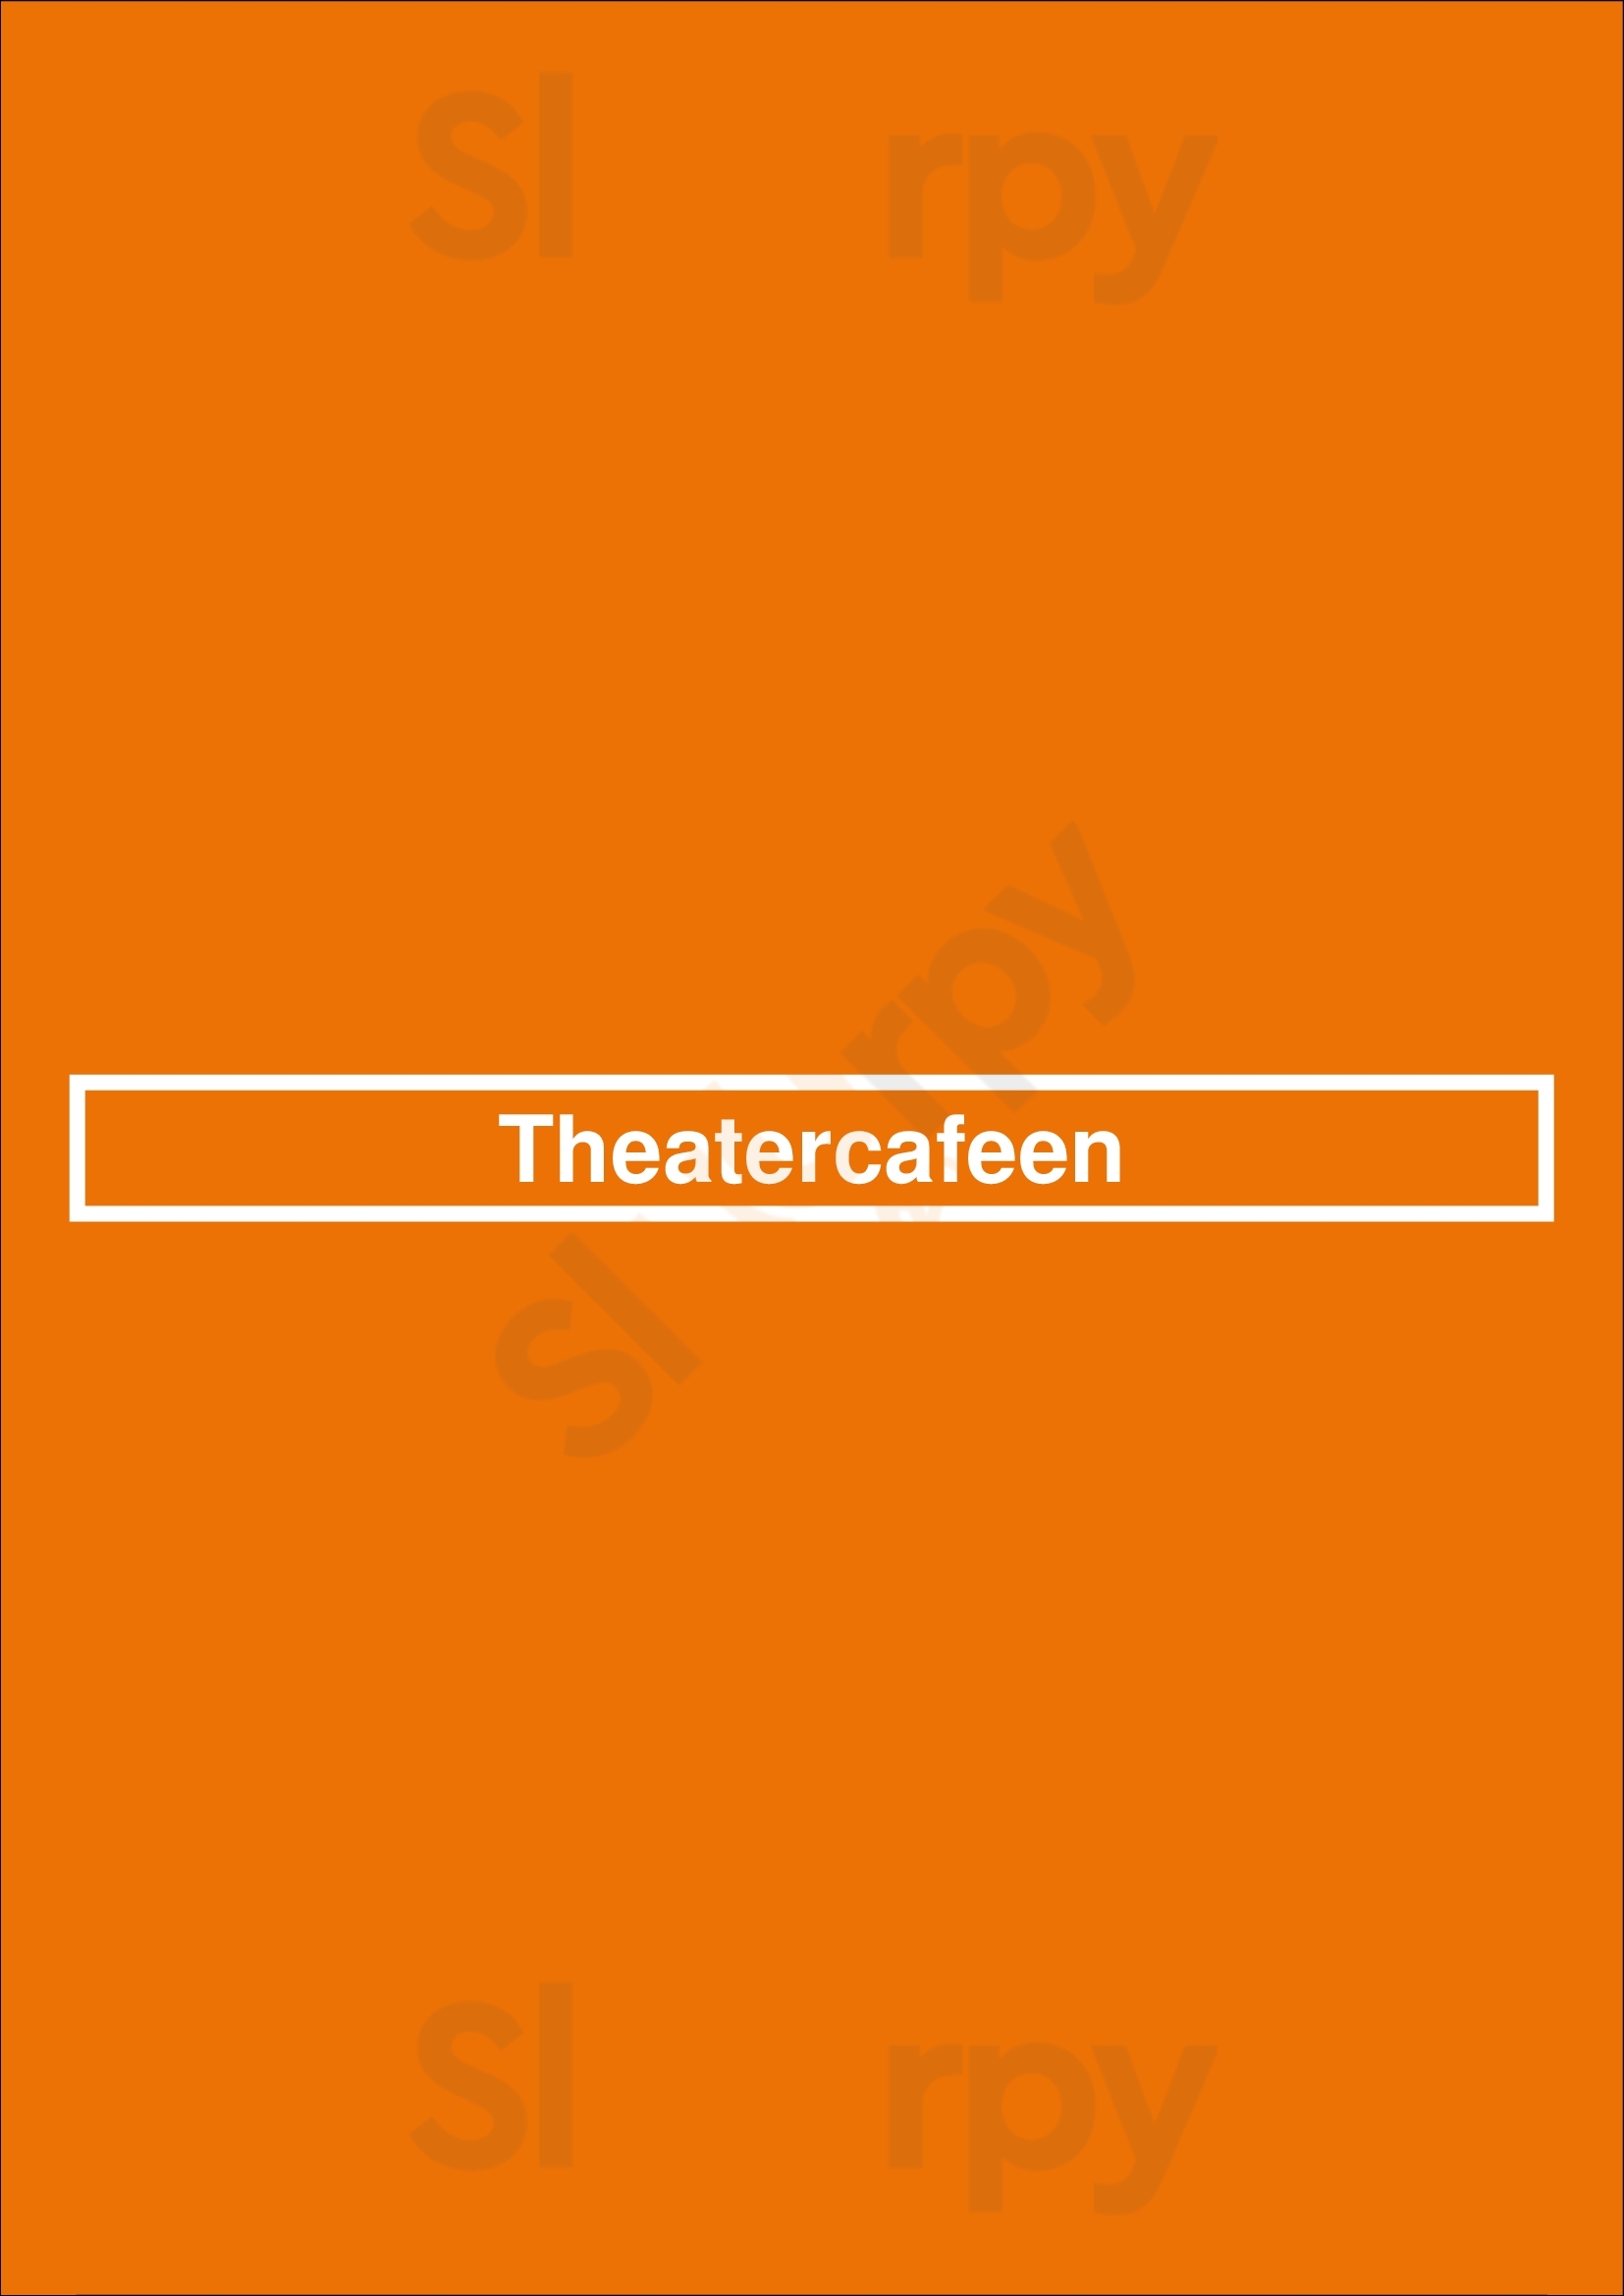 Theatercafeen Oslo Menu - 1